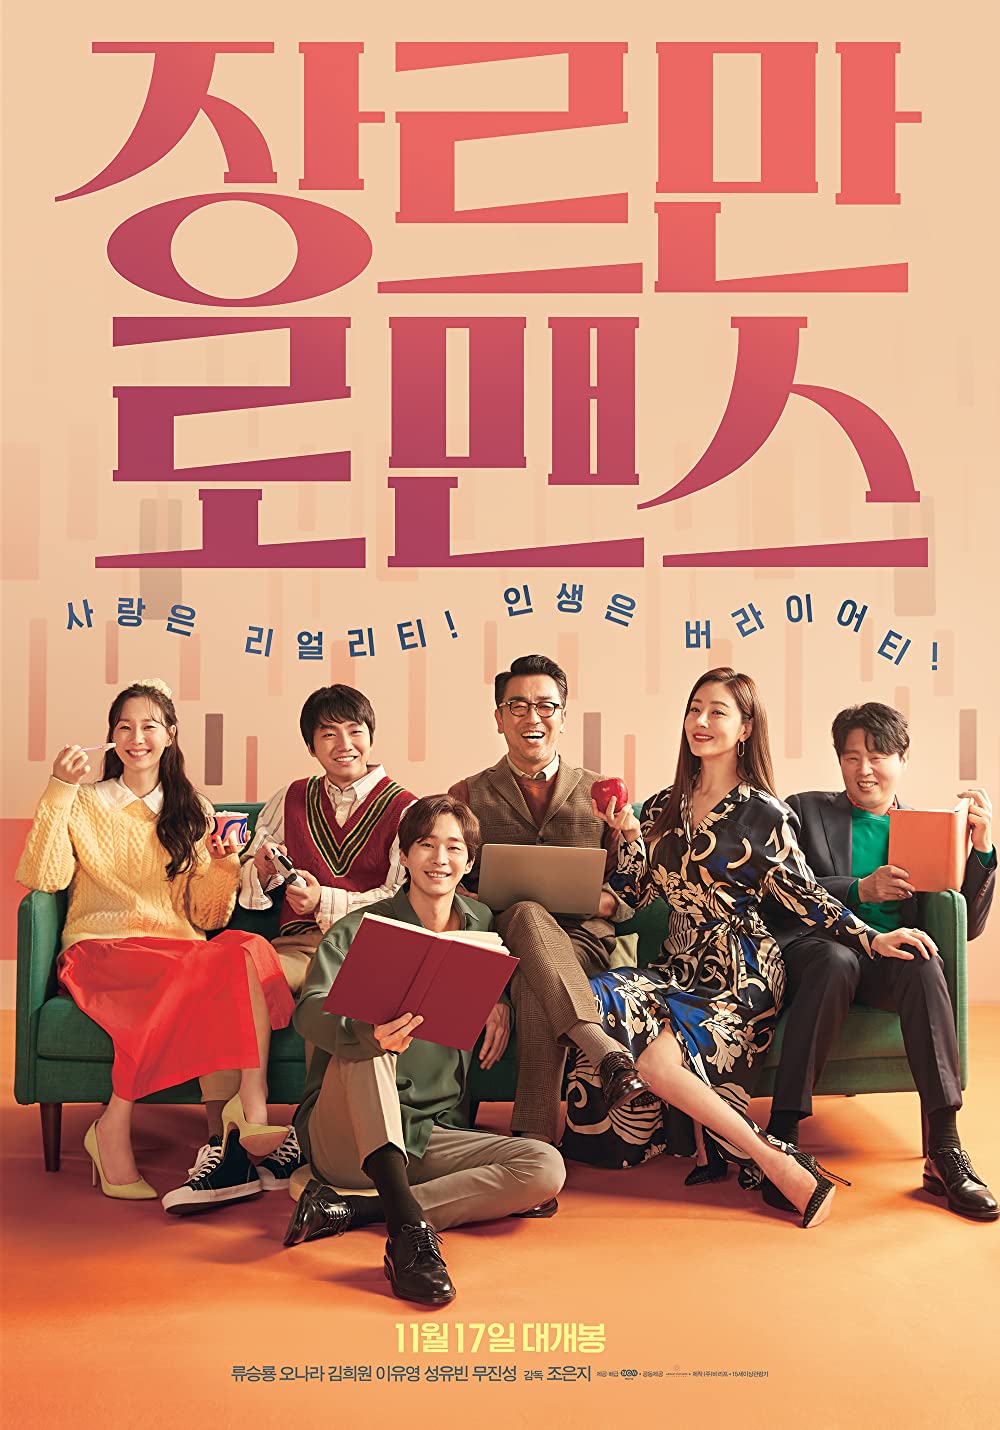 11 Film Korea Netflix terbaik, dari genre thriller sampai romantis